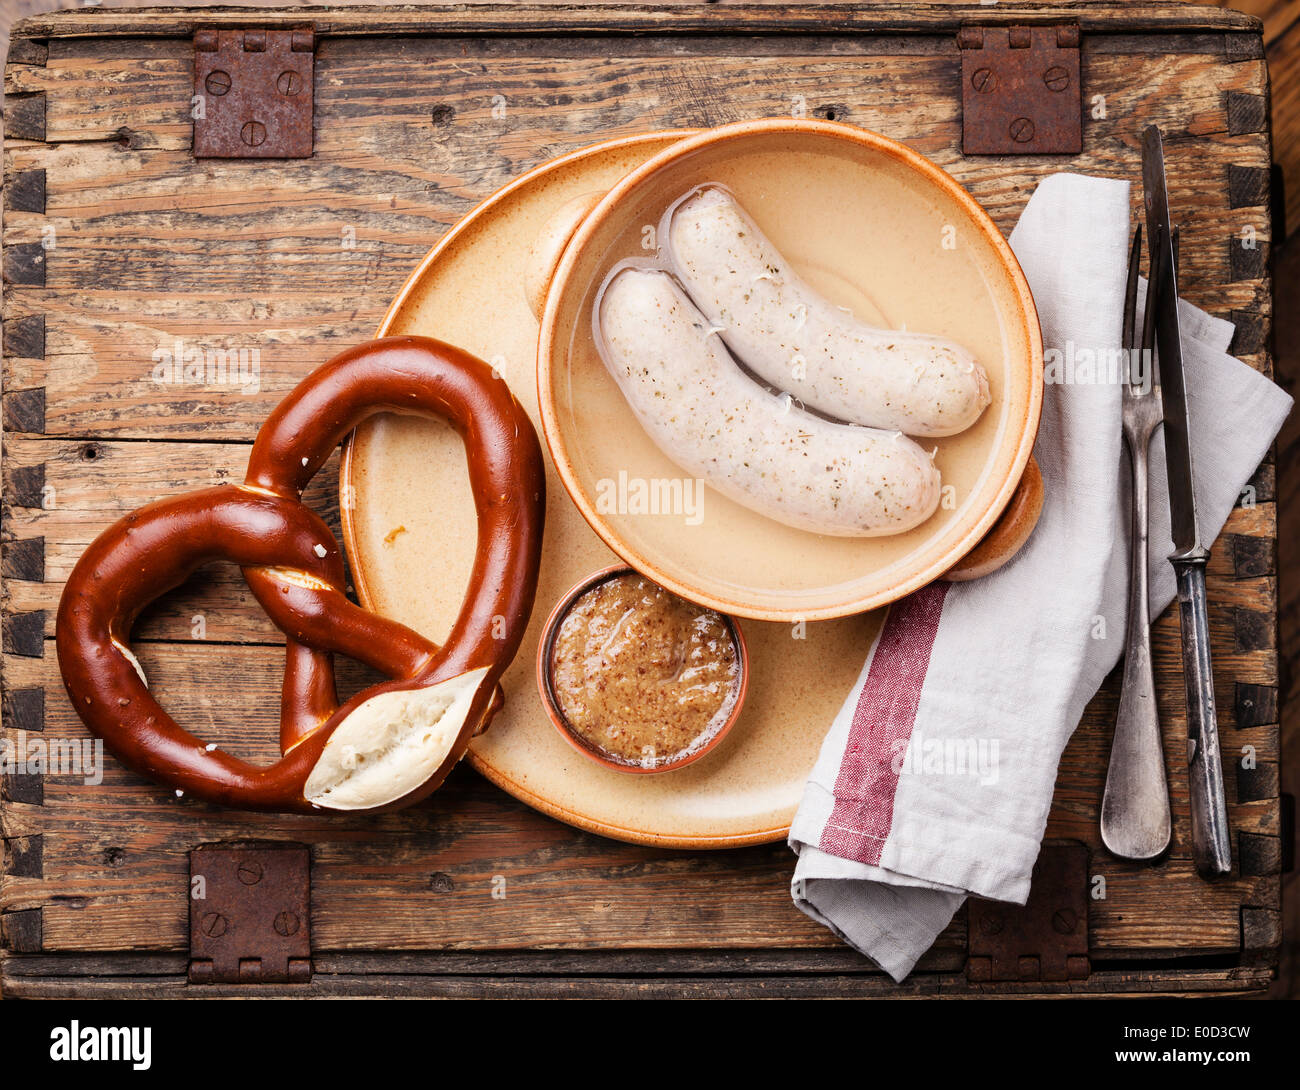 Snack bavarese con weisswurst salsicce bianche e pretzel Foto Stock